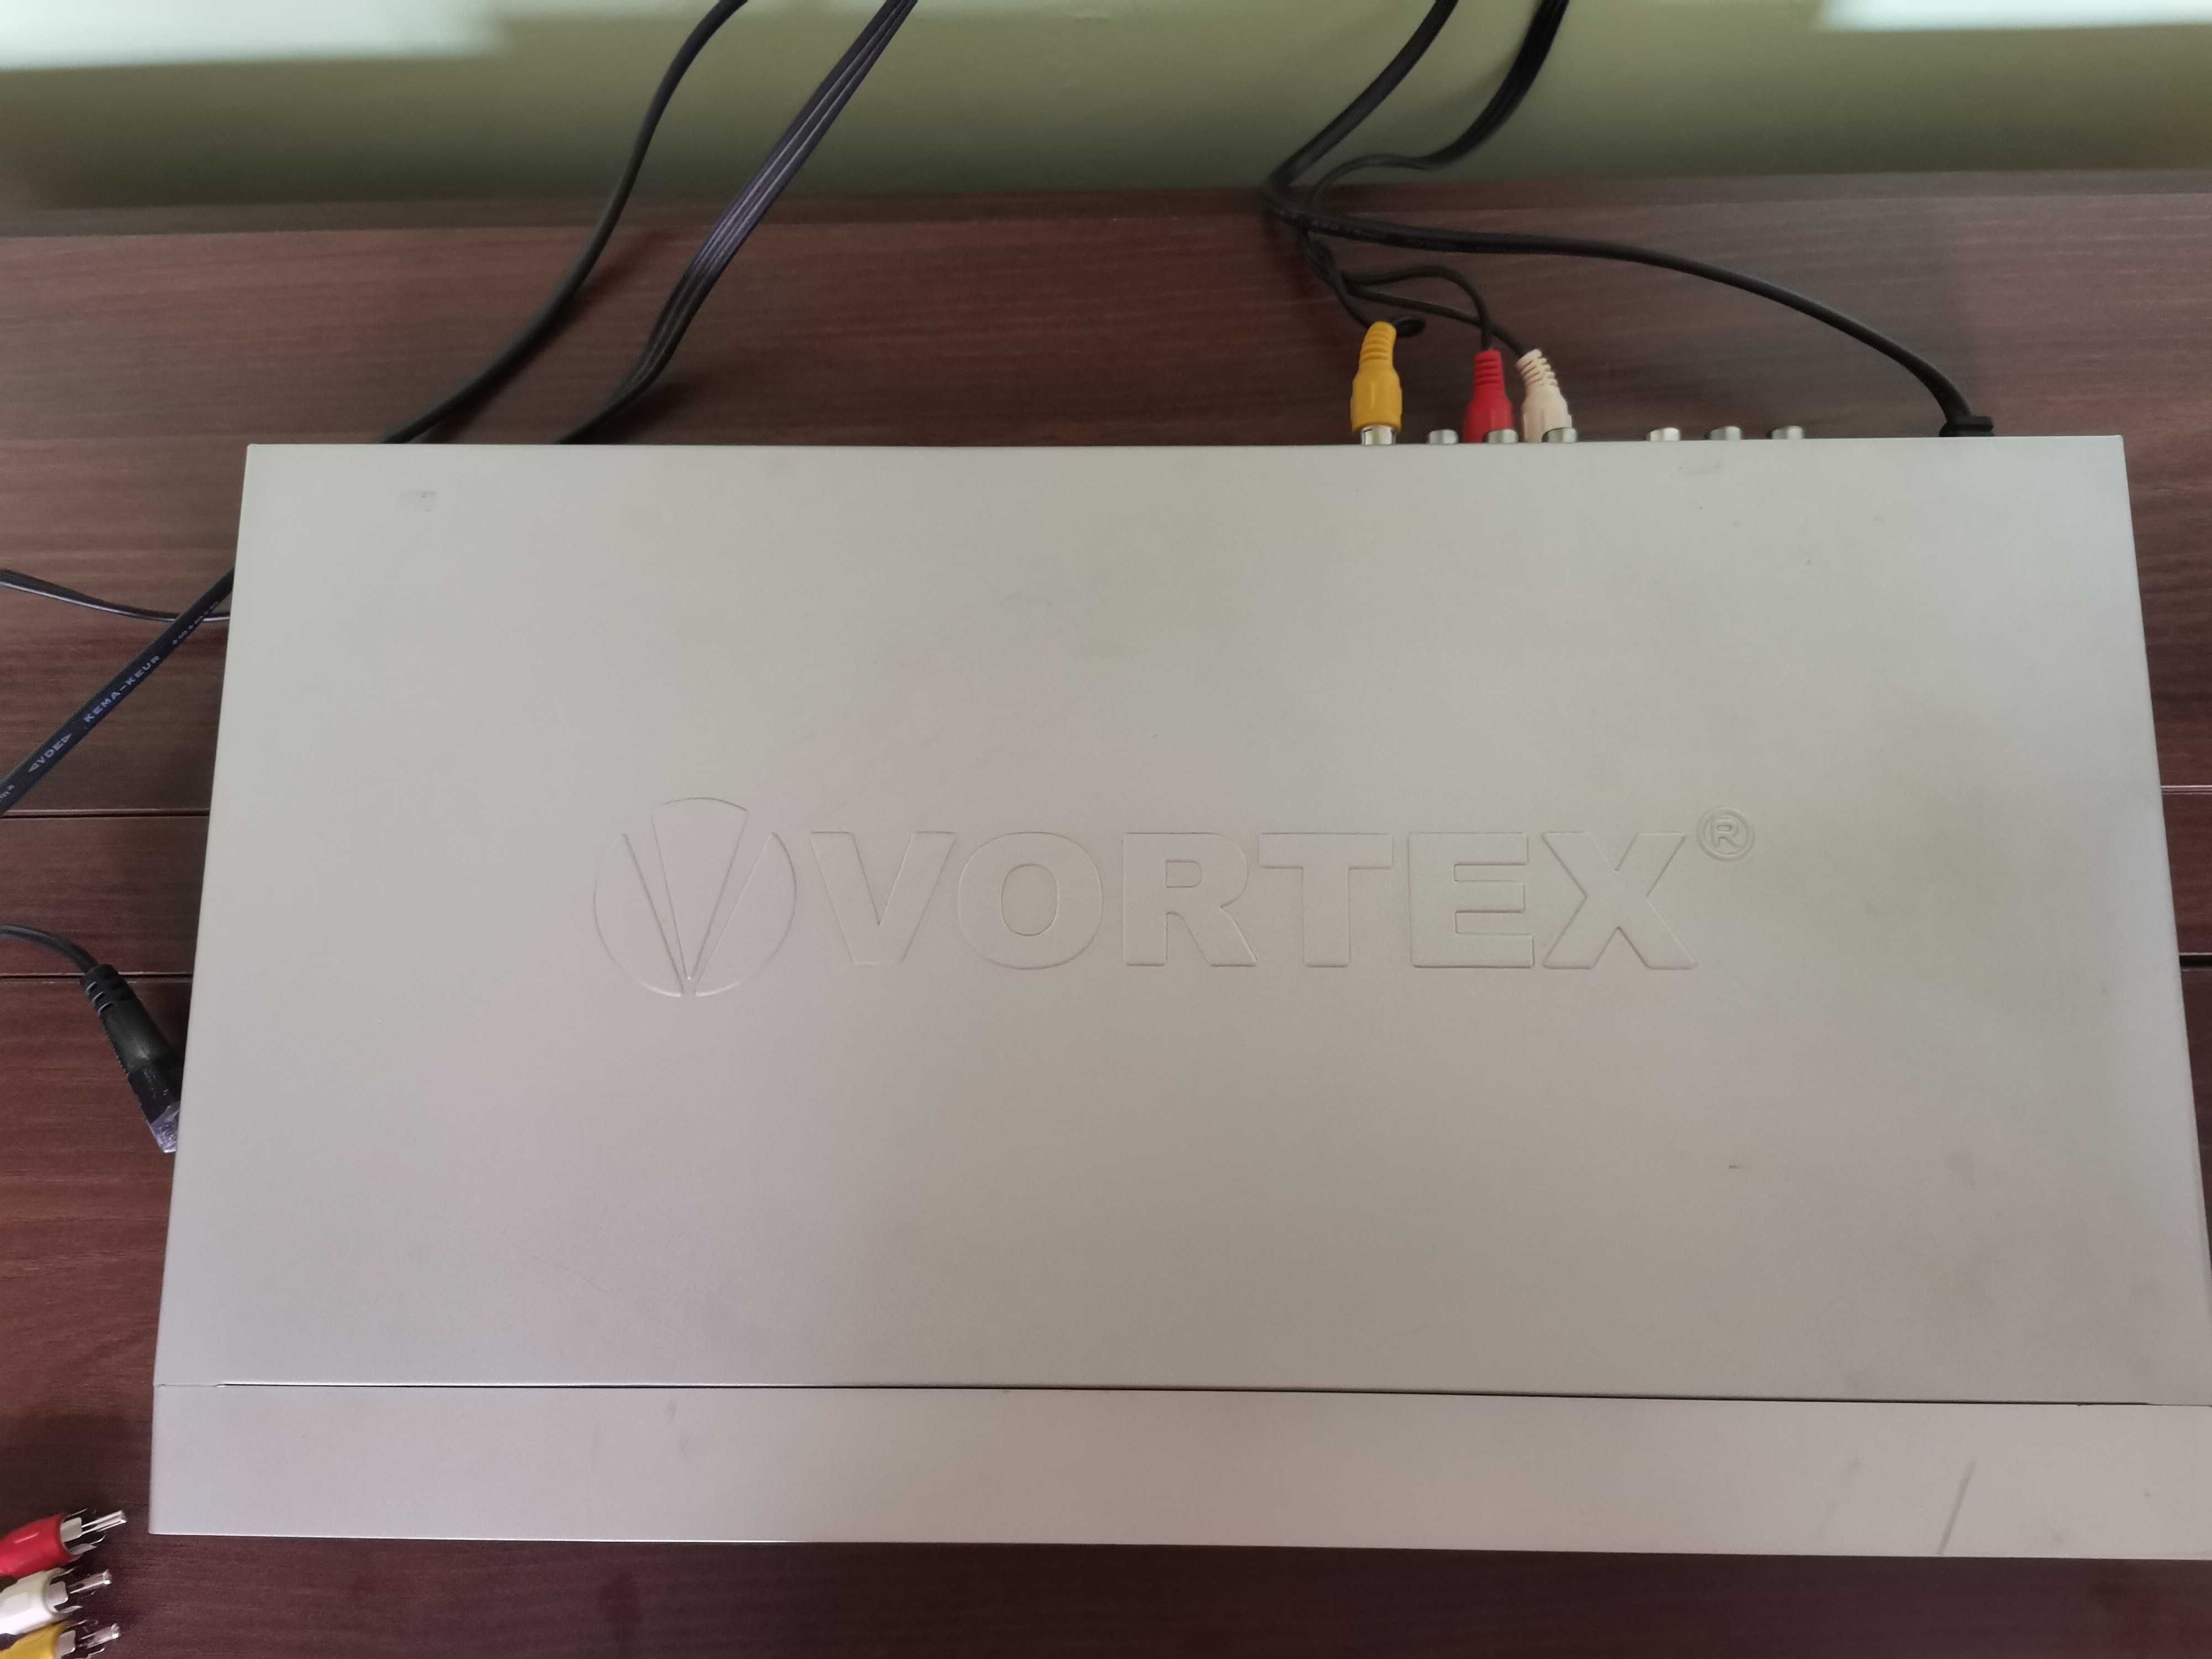 DVD player marca Vortex